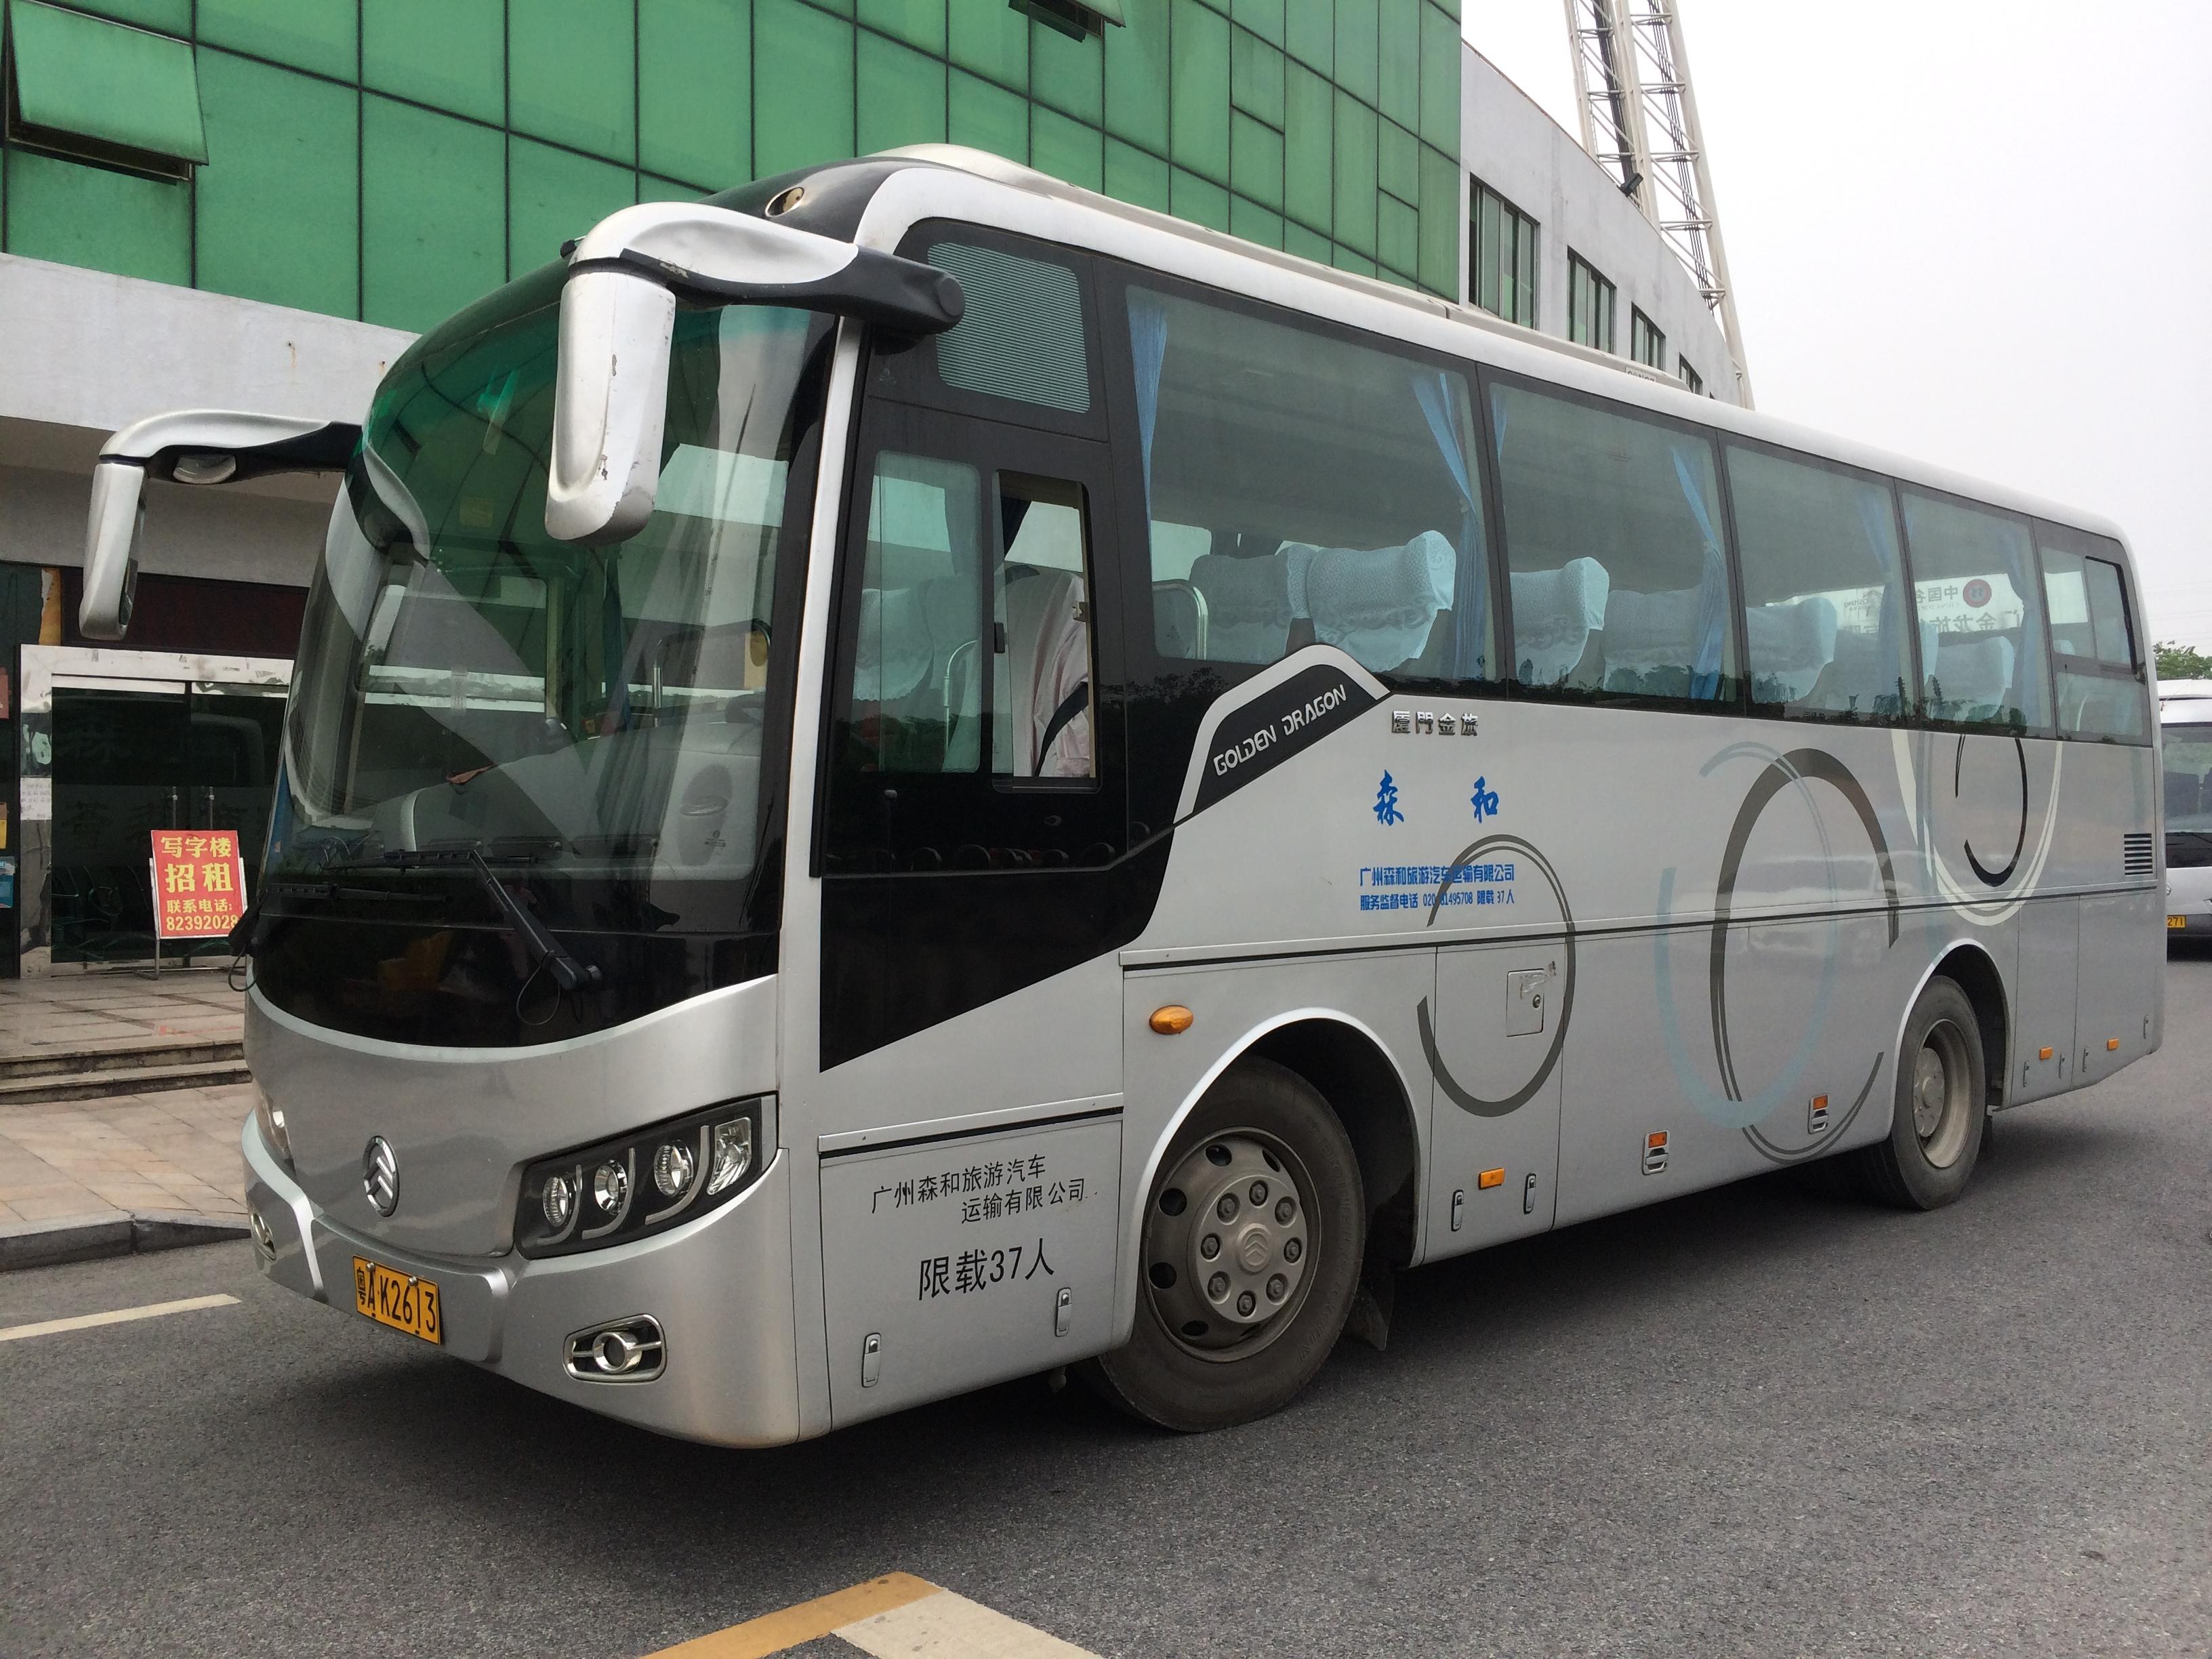 广州海珠旅游租车大巴出租品牌 - 微信公众平台